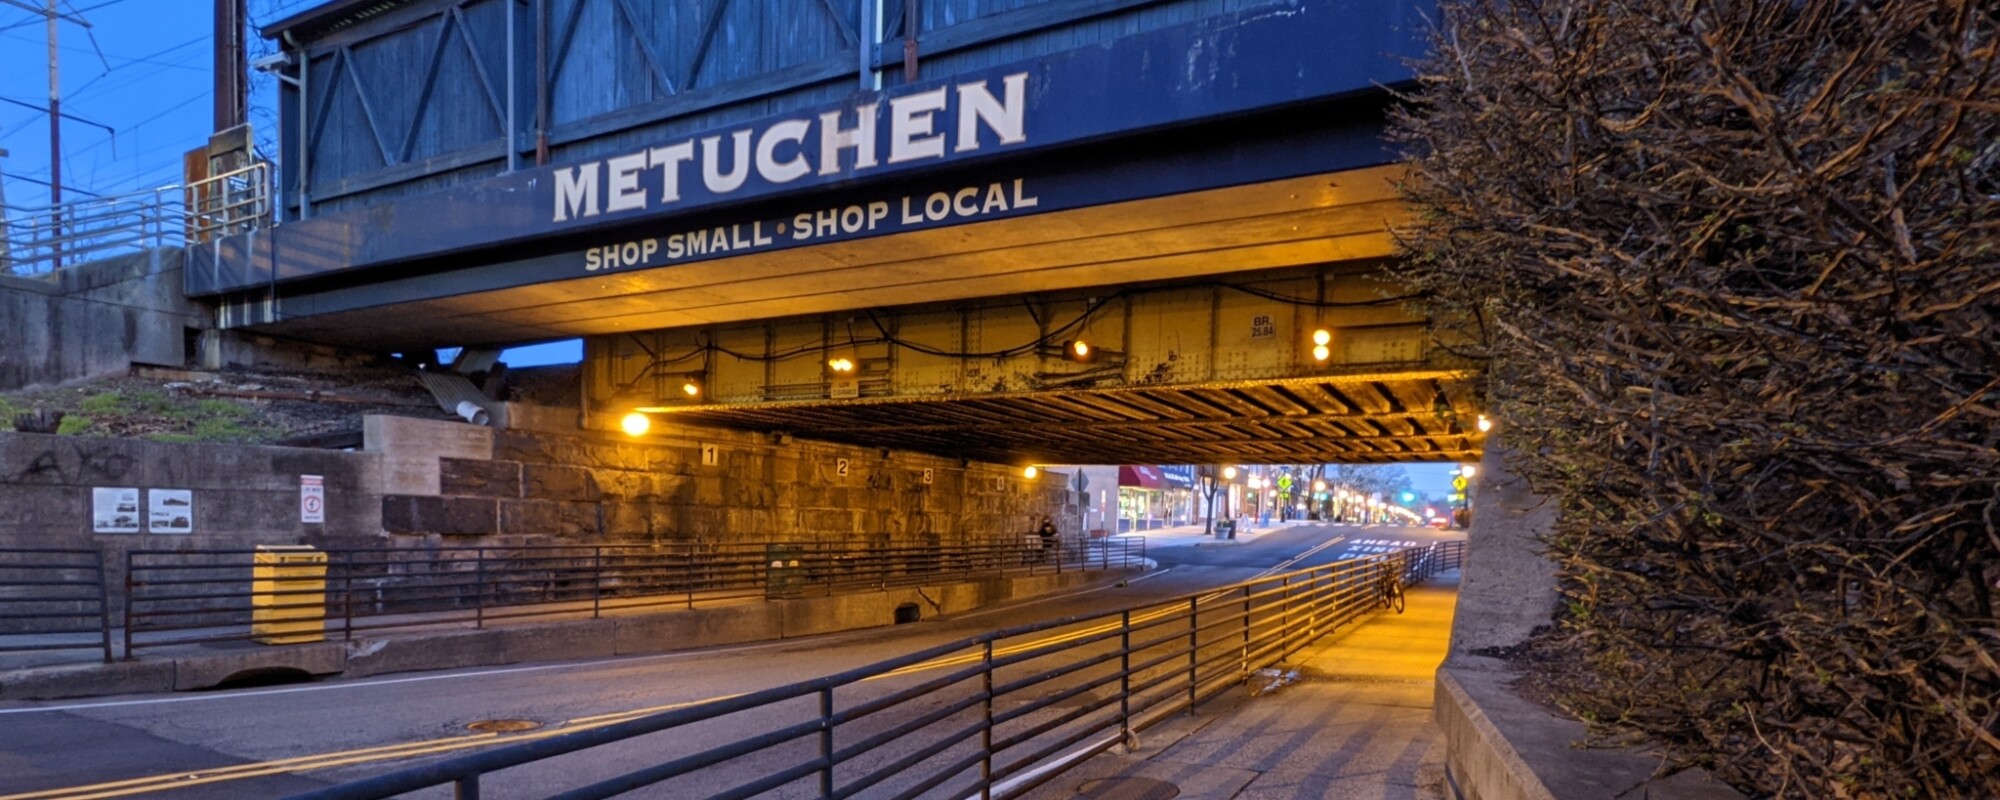 Una línea de ferrocarril cubierta y elevada cruza una calzada y un paseo peatonal. Las palabras "Metuchen Shop Small, Shop Local" están pintadas en grandes letras blancas.